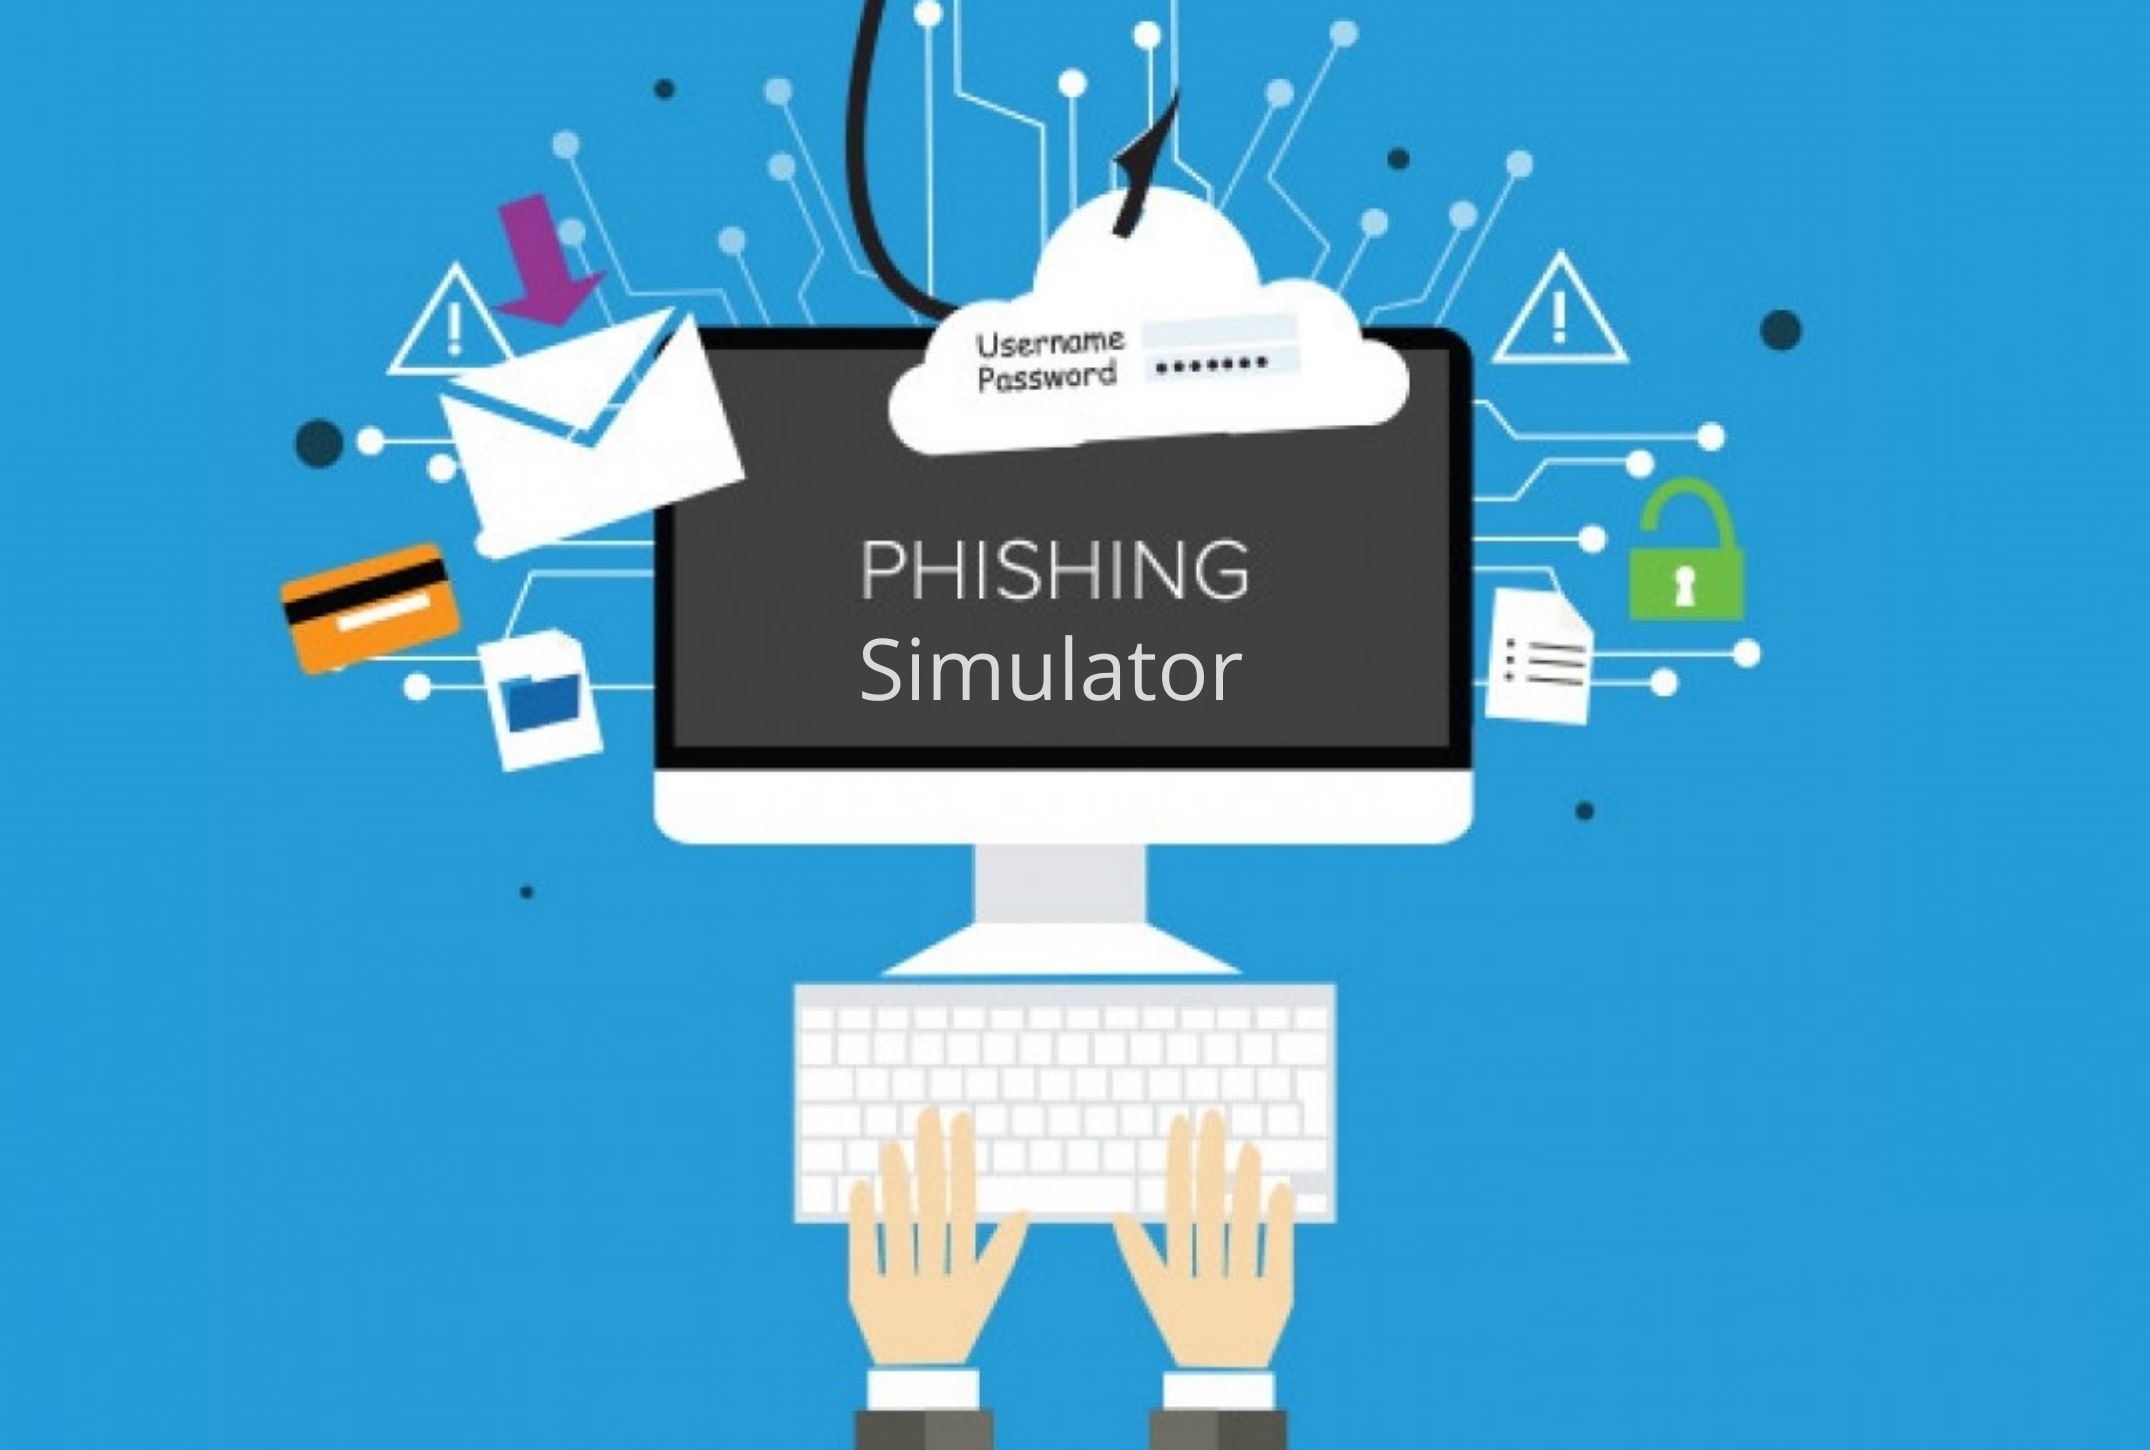 Top-down analysis of Phishing Simulator